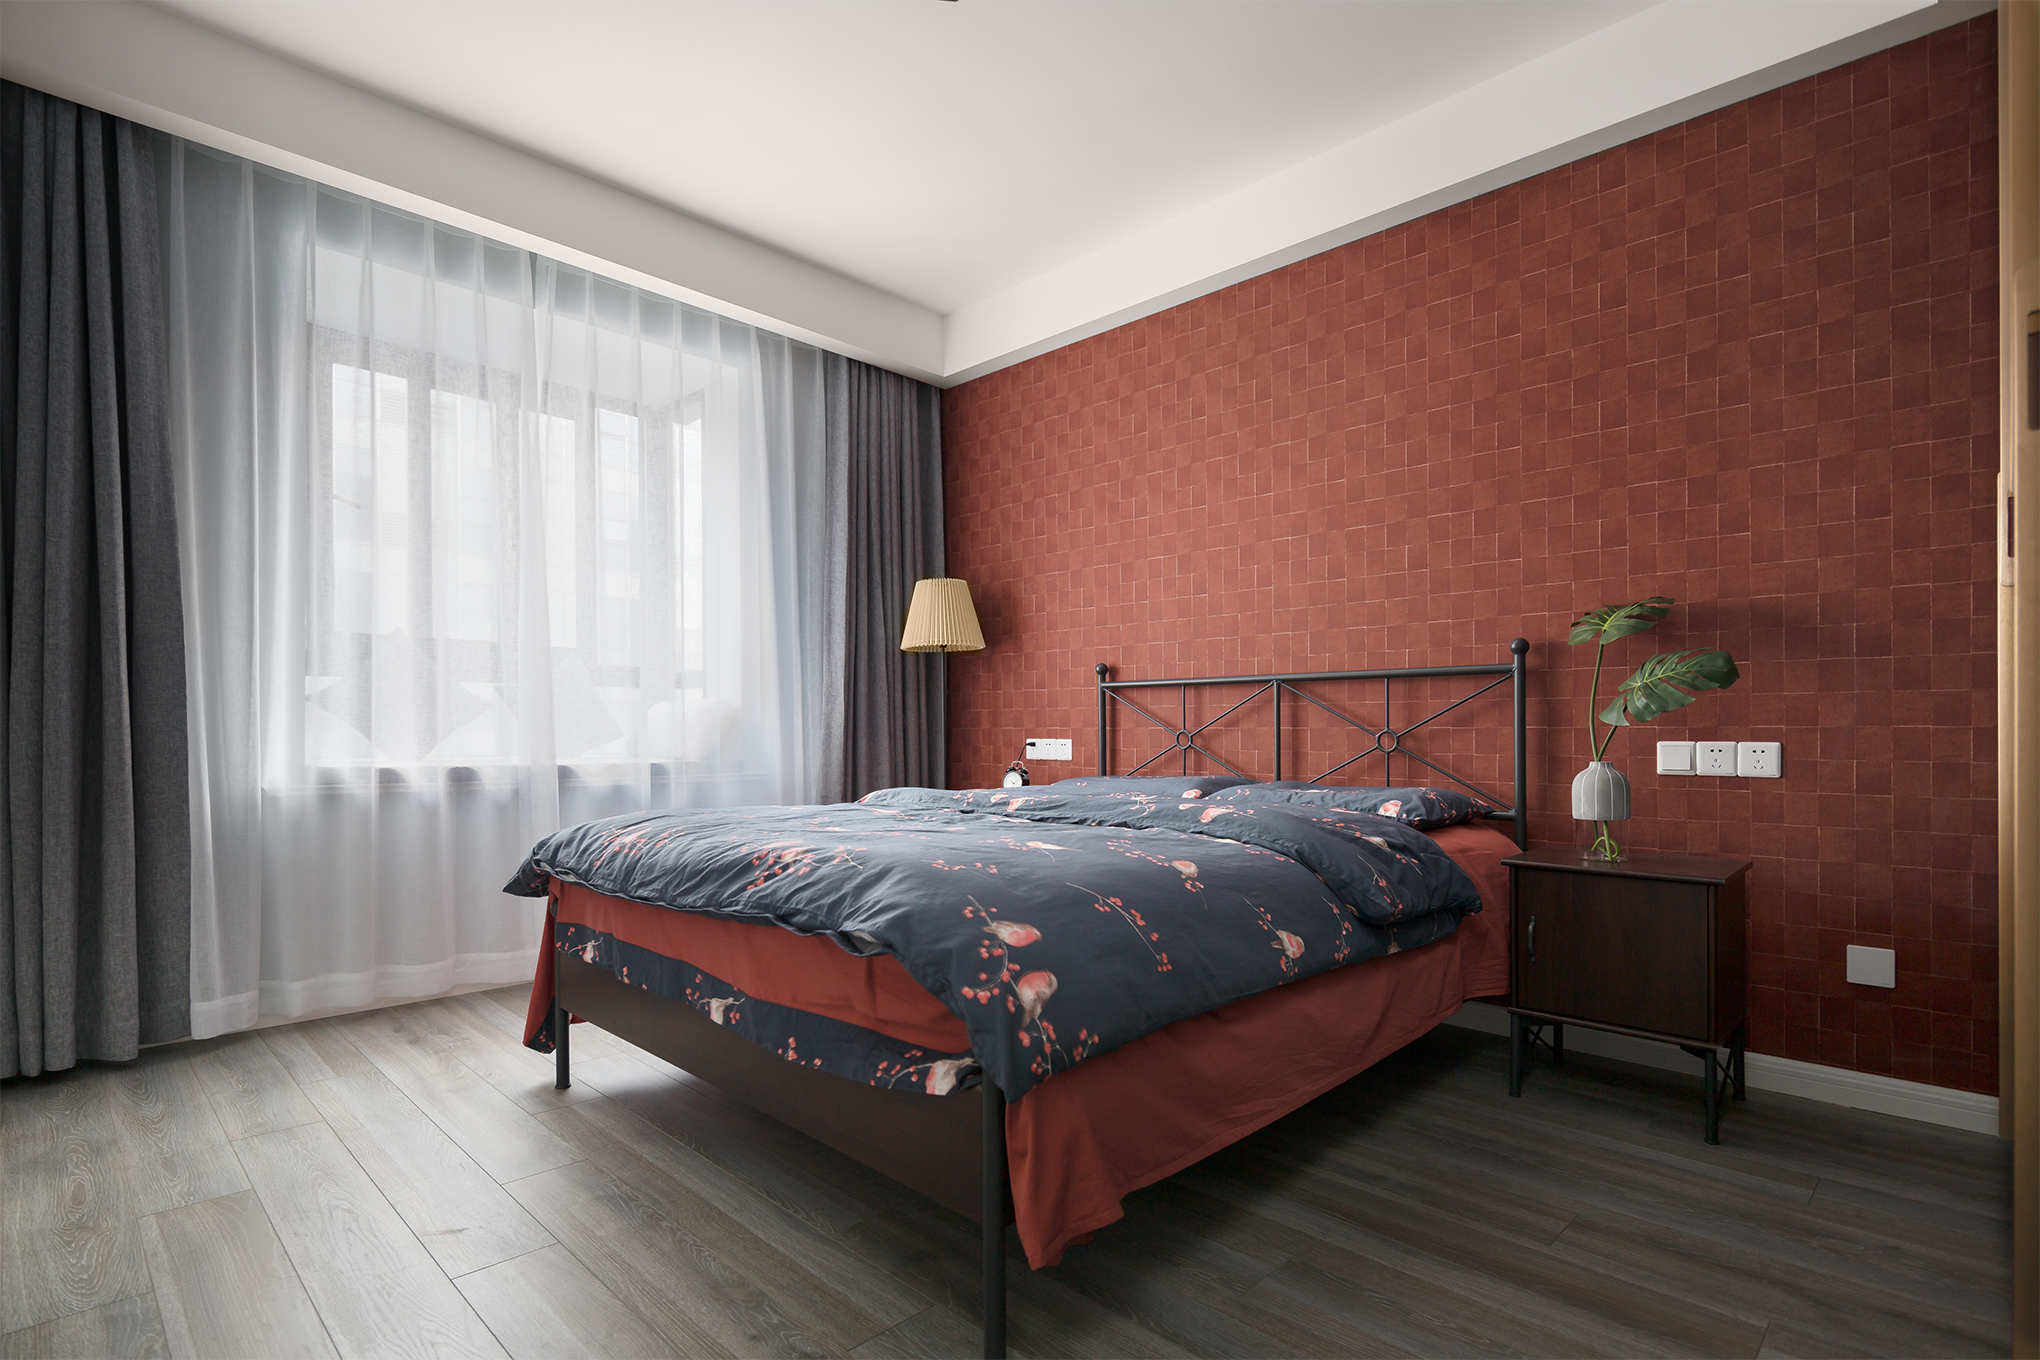 卧室窗帘装修效果图简致北欧风主卧设计图片北欧风卧室设计图片赏析